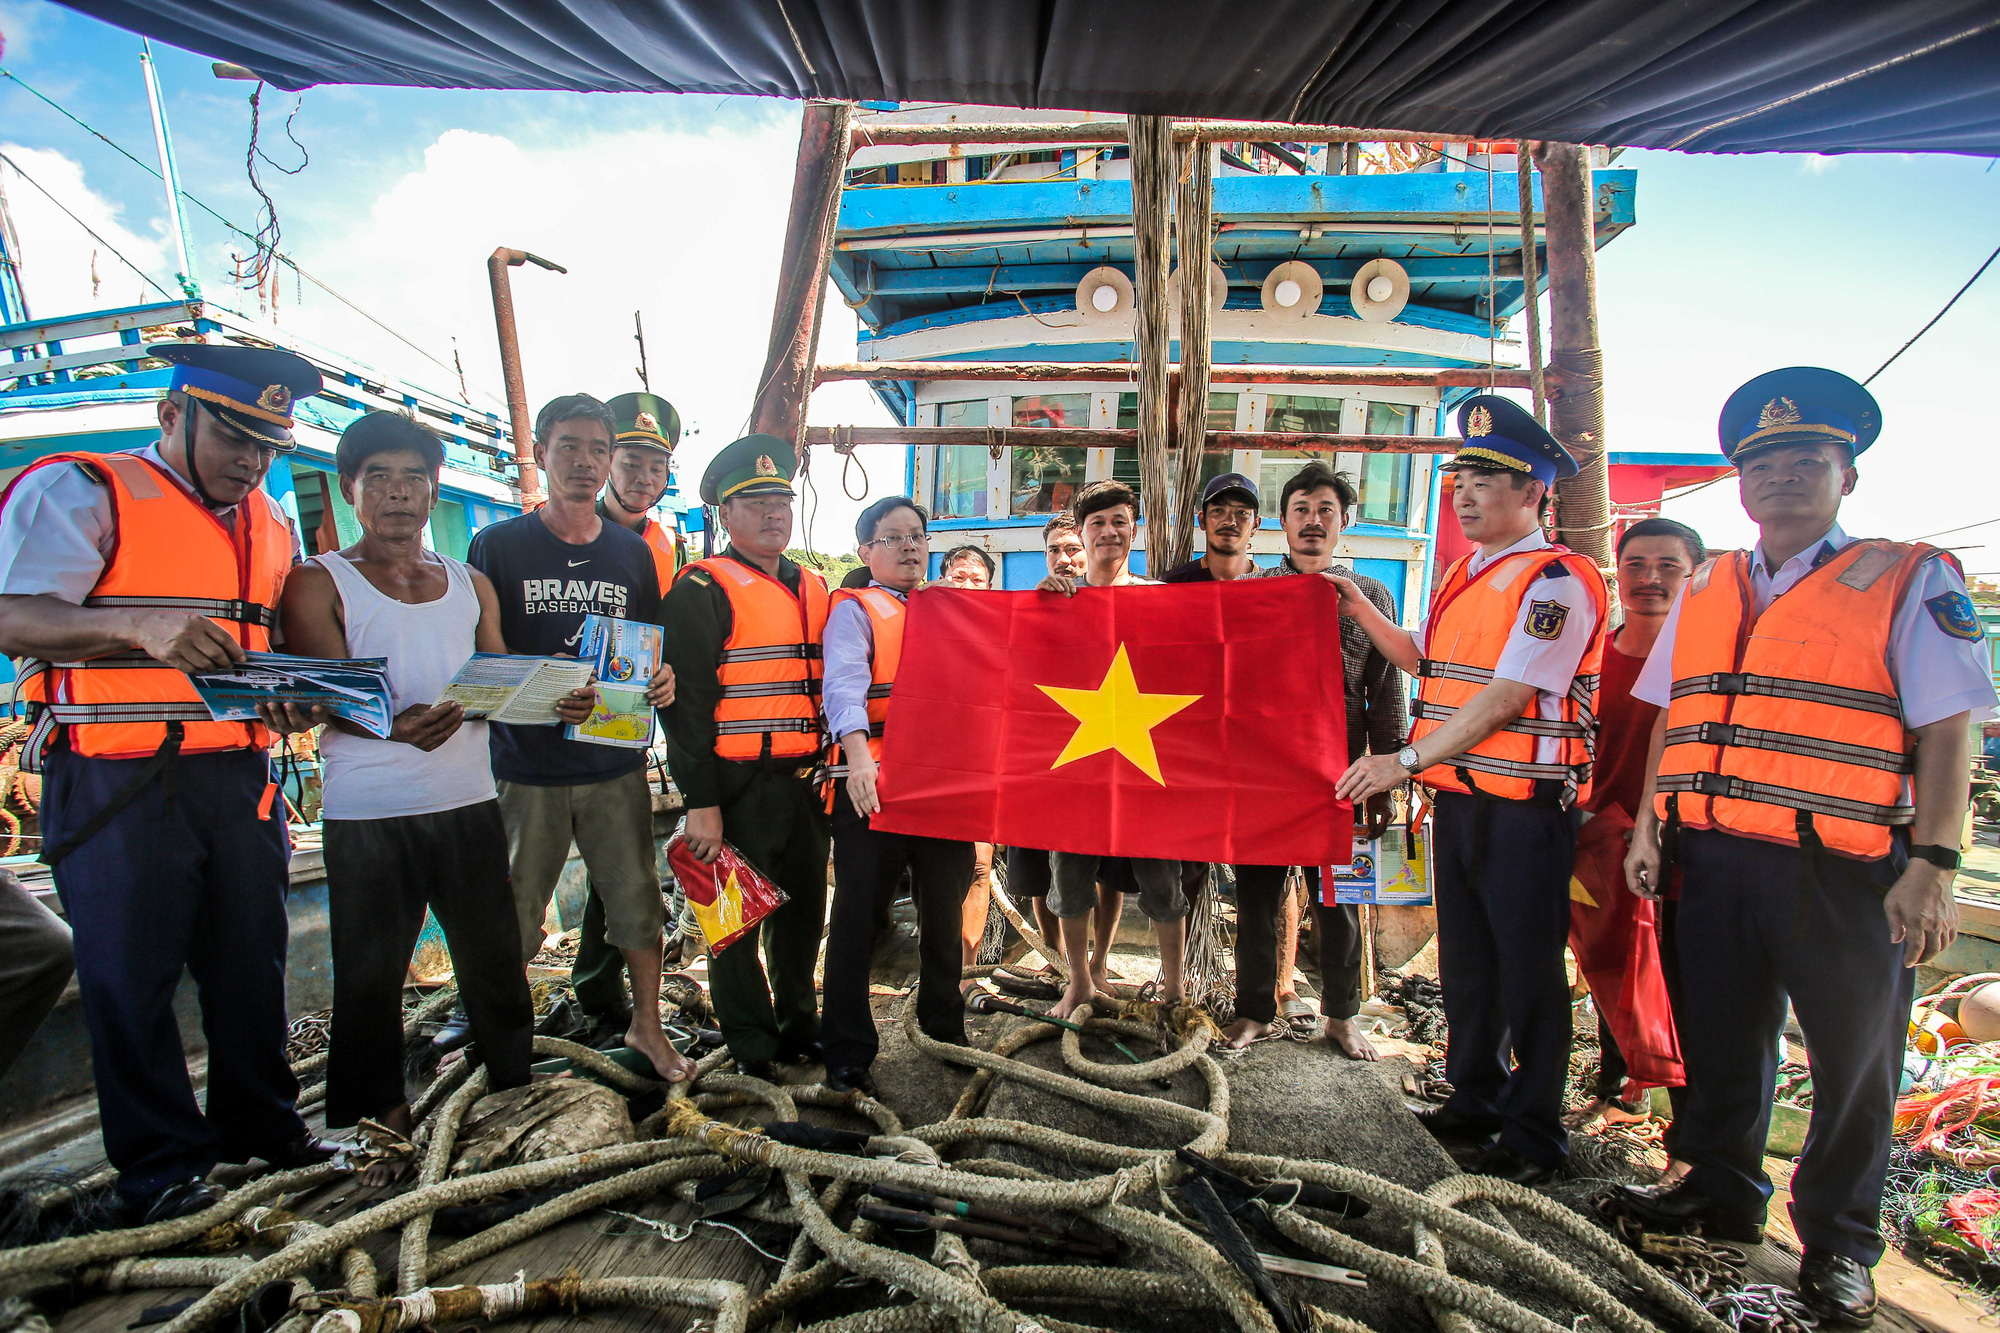 Hoàng Sa là một phần của lãnh thổ Việt Nam, được bảo vệ chặt chẽ bởi chính phủ và dân tộc Việt Nam qua nhiều thế hệ. Việc giữ gìn và bảo vệ tài nguyên biển là một trong những ưu tiên hàng đầu của chính phủ Việt Nam.